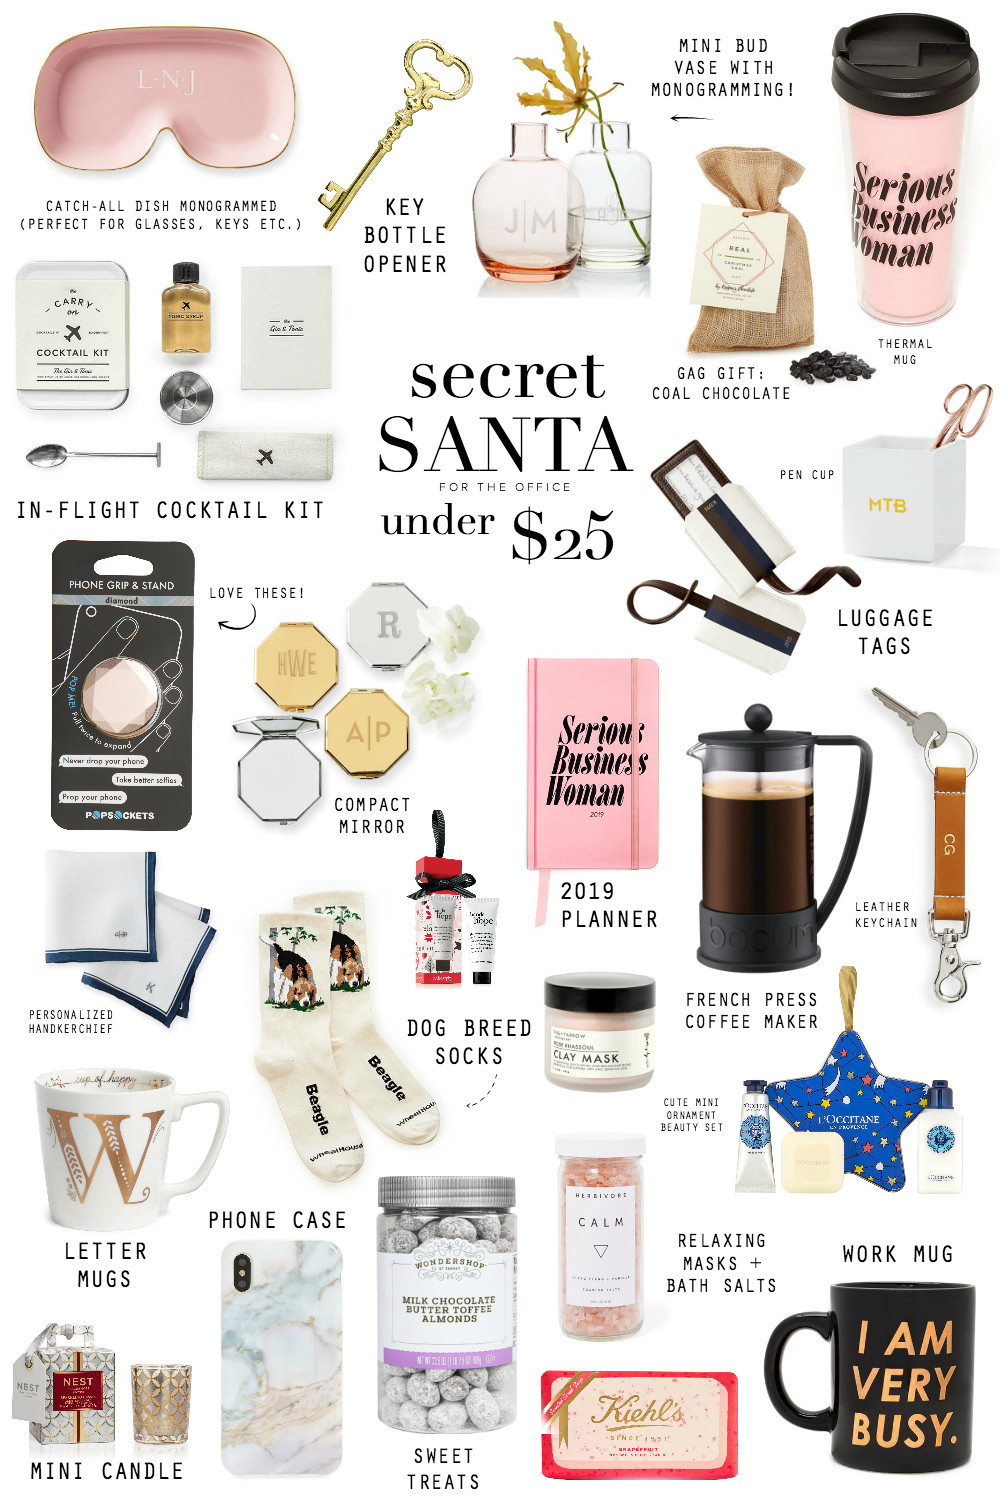 Secret Santa Gift Ideas For Girls
 GIFT GUIDE SECRET SANTA UNDER $25 STEPHANIE STERJOVSKI